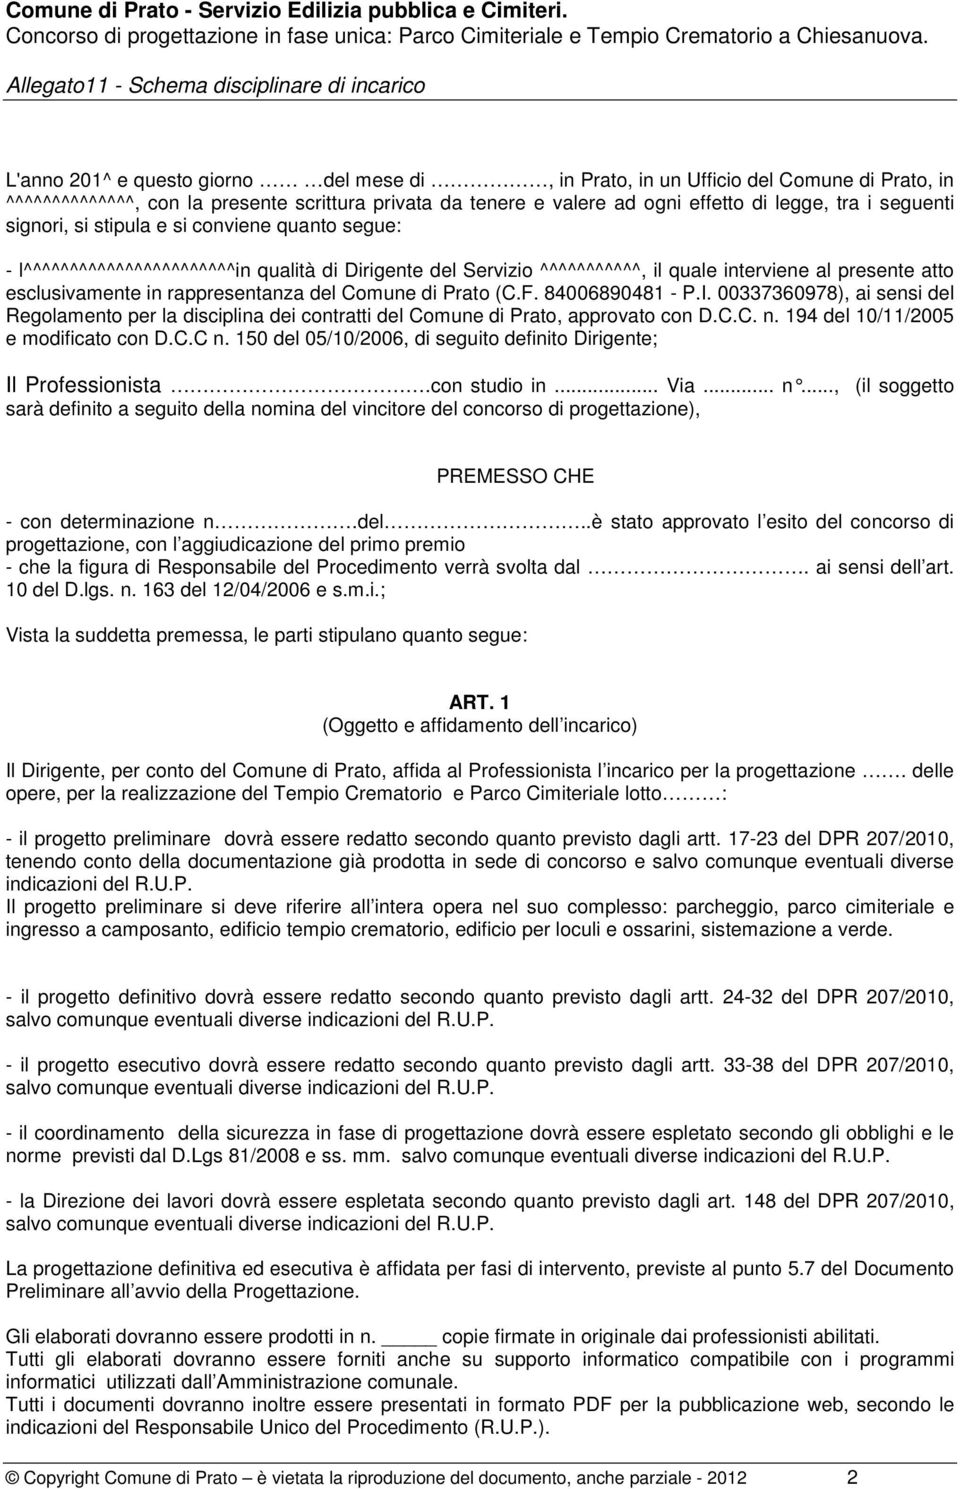 Comune di Prato (C.F. 84006890481 - P.I. 00337360978), ai sensi del Regolamento per la disciplina dei contratti del Comune di Prato, approvato con D.C.C. n. 194 del 10/11/2005 e modificato con D.C.C n.